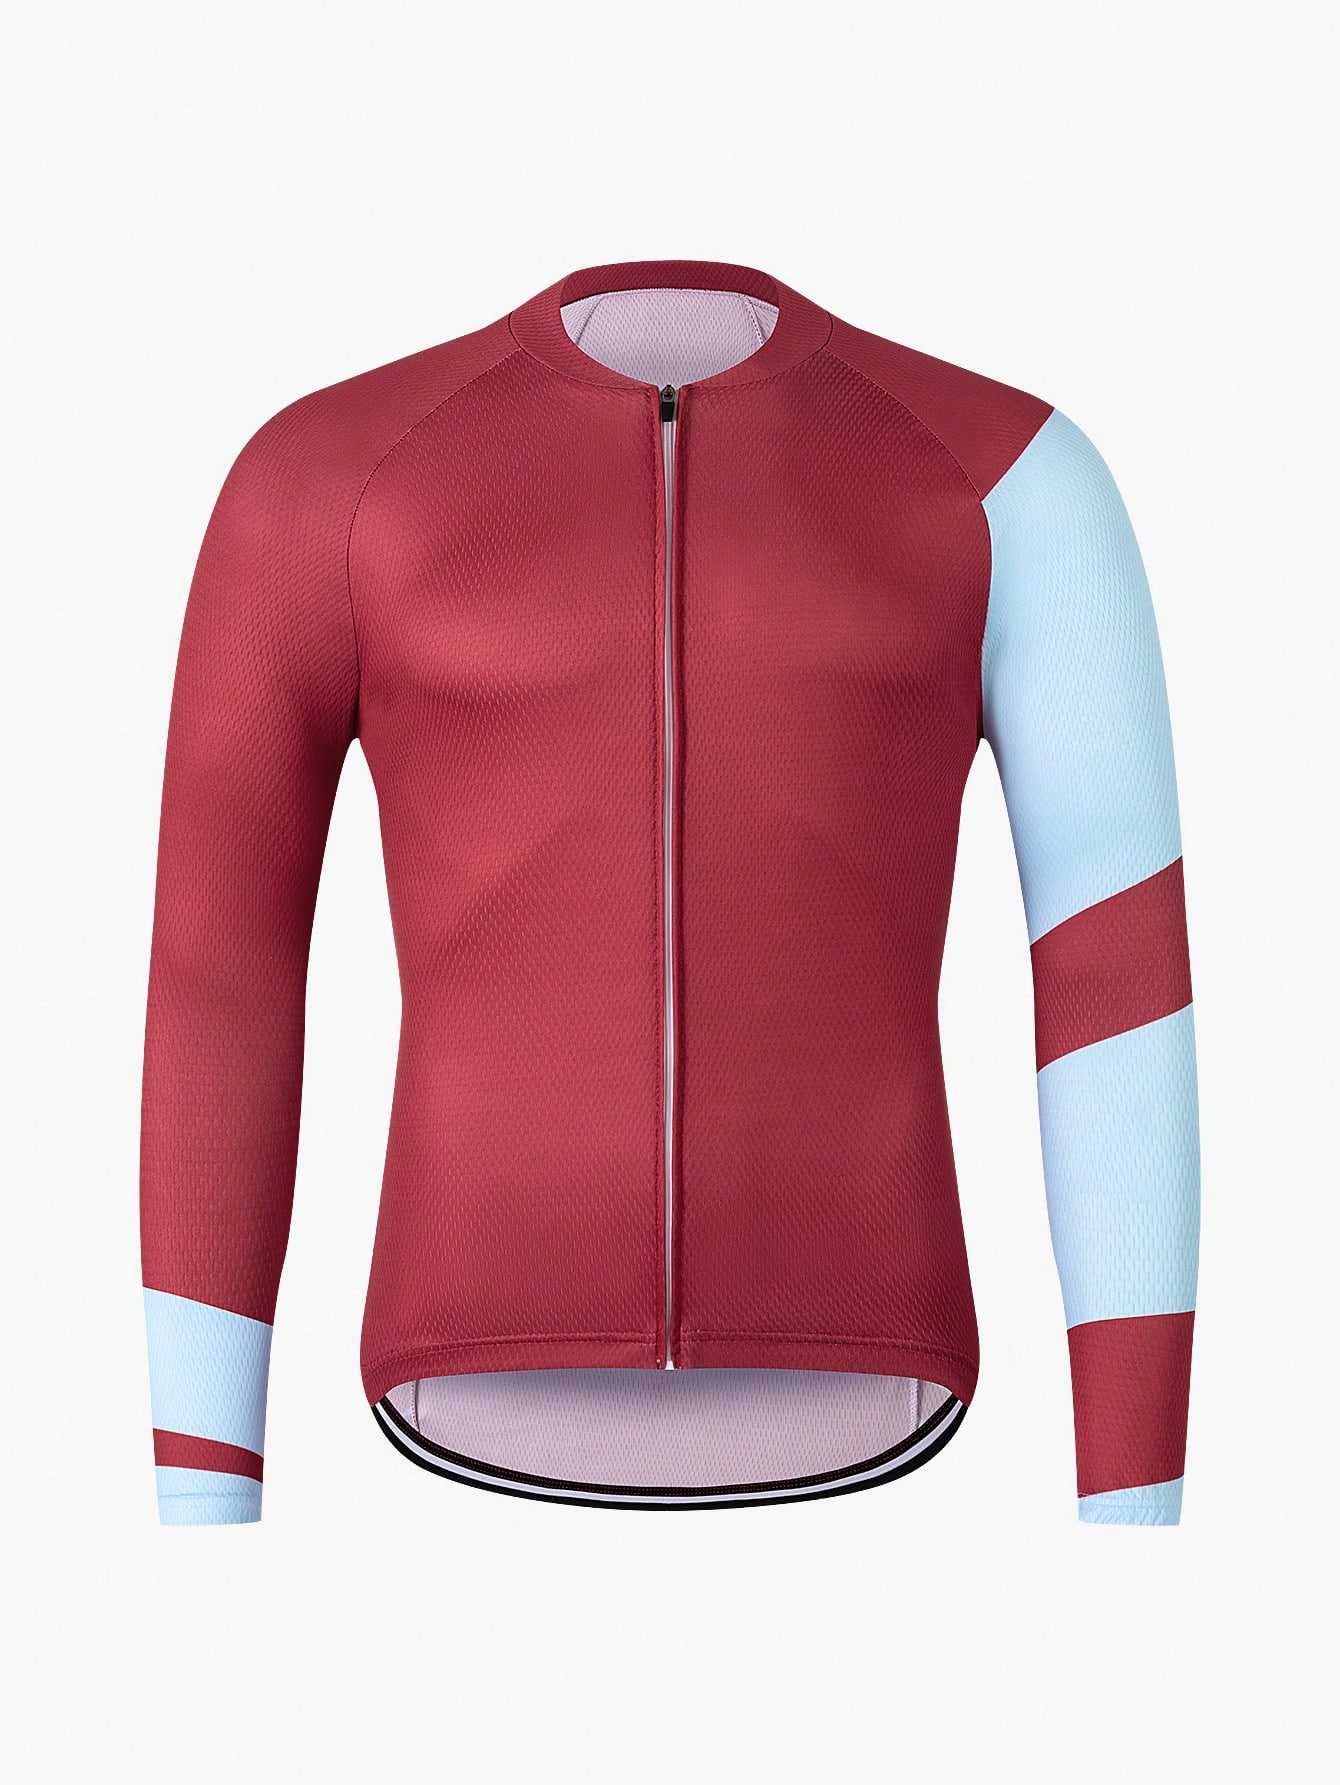 Велосипедная куртка с коротким рукавом спереди на молнии цветных блоков с рукавом реглан для воздухопроницаемости, красный цена и фото